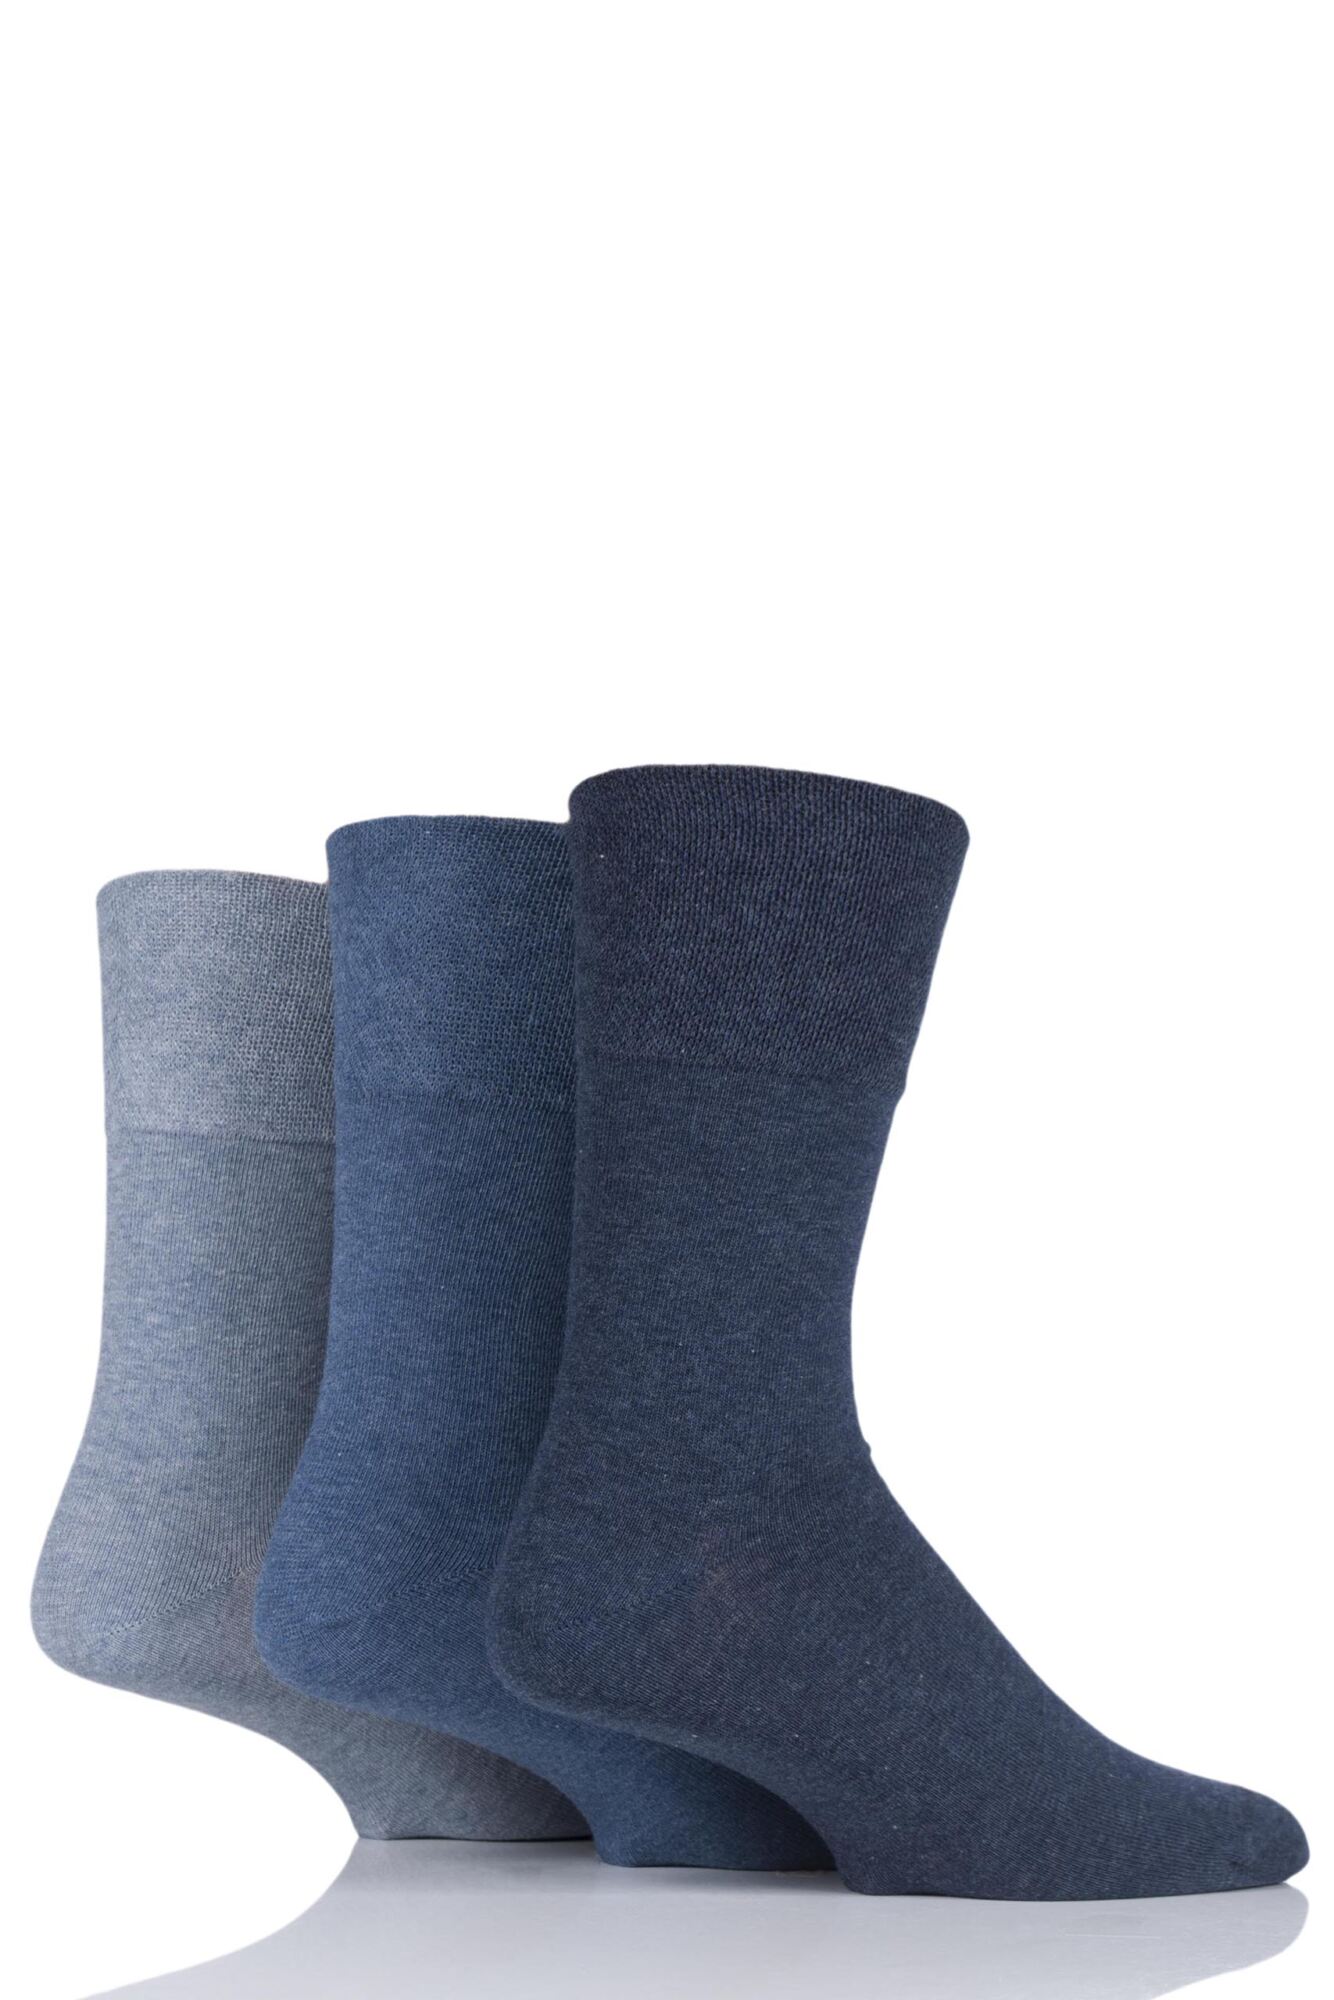 3 Pair Footnurse Gentle Grip Diabetic Socks Men's - Iomi